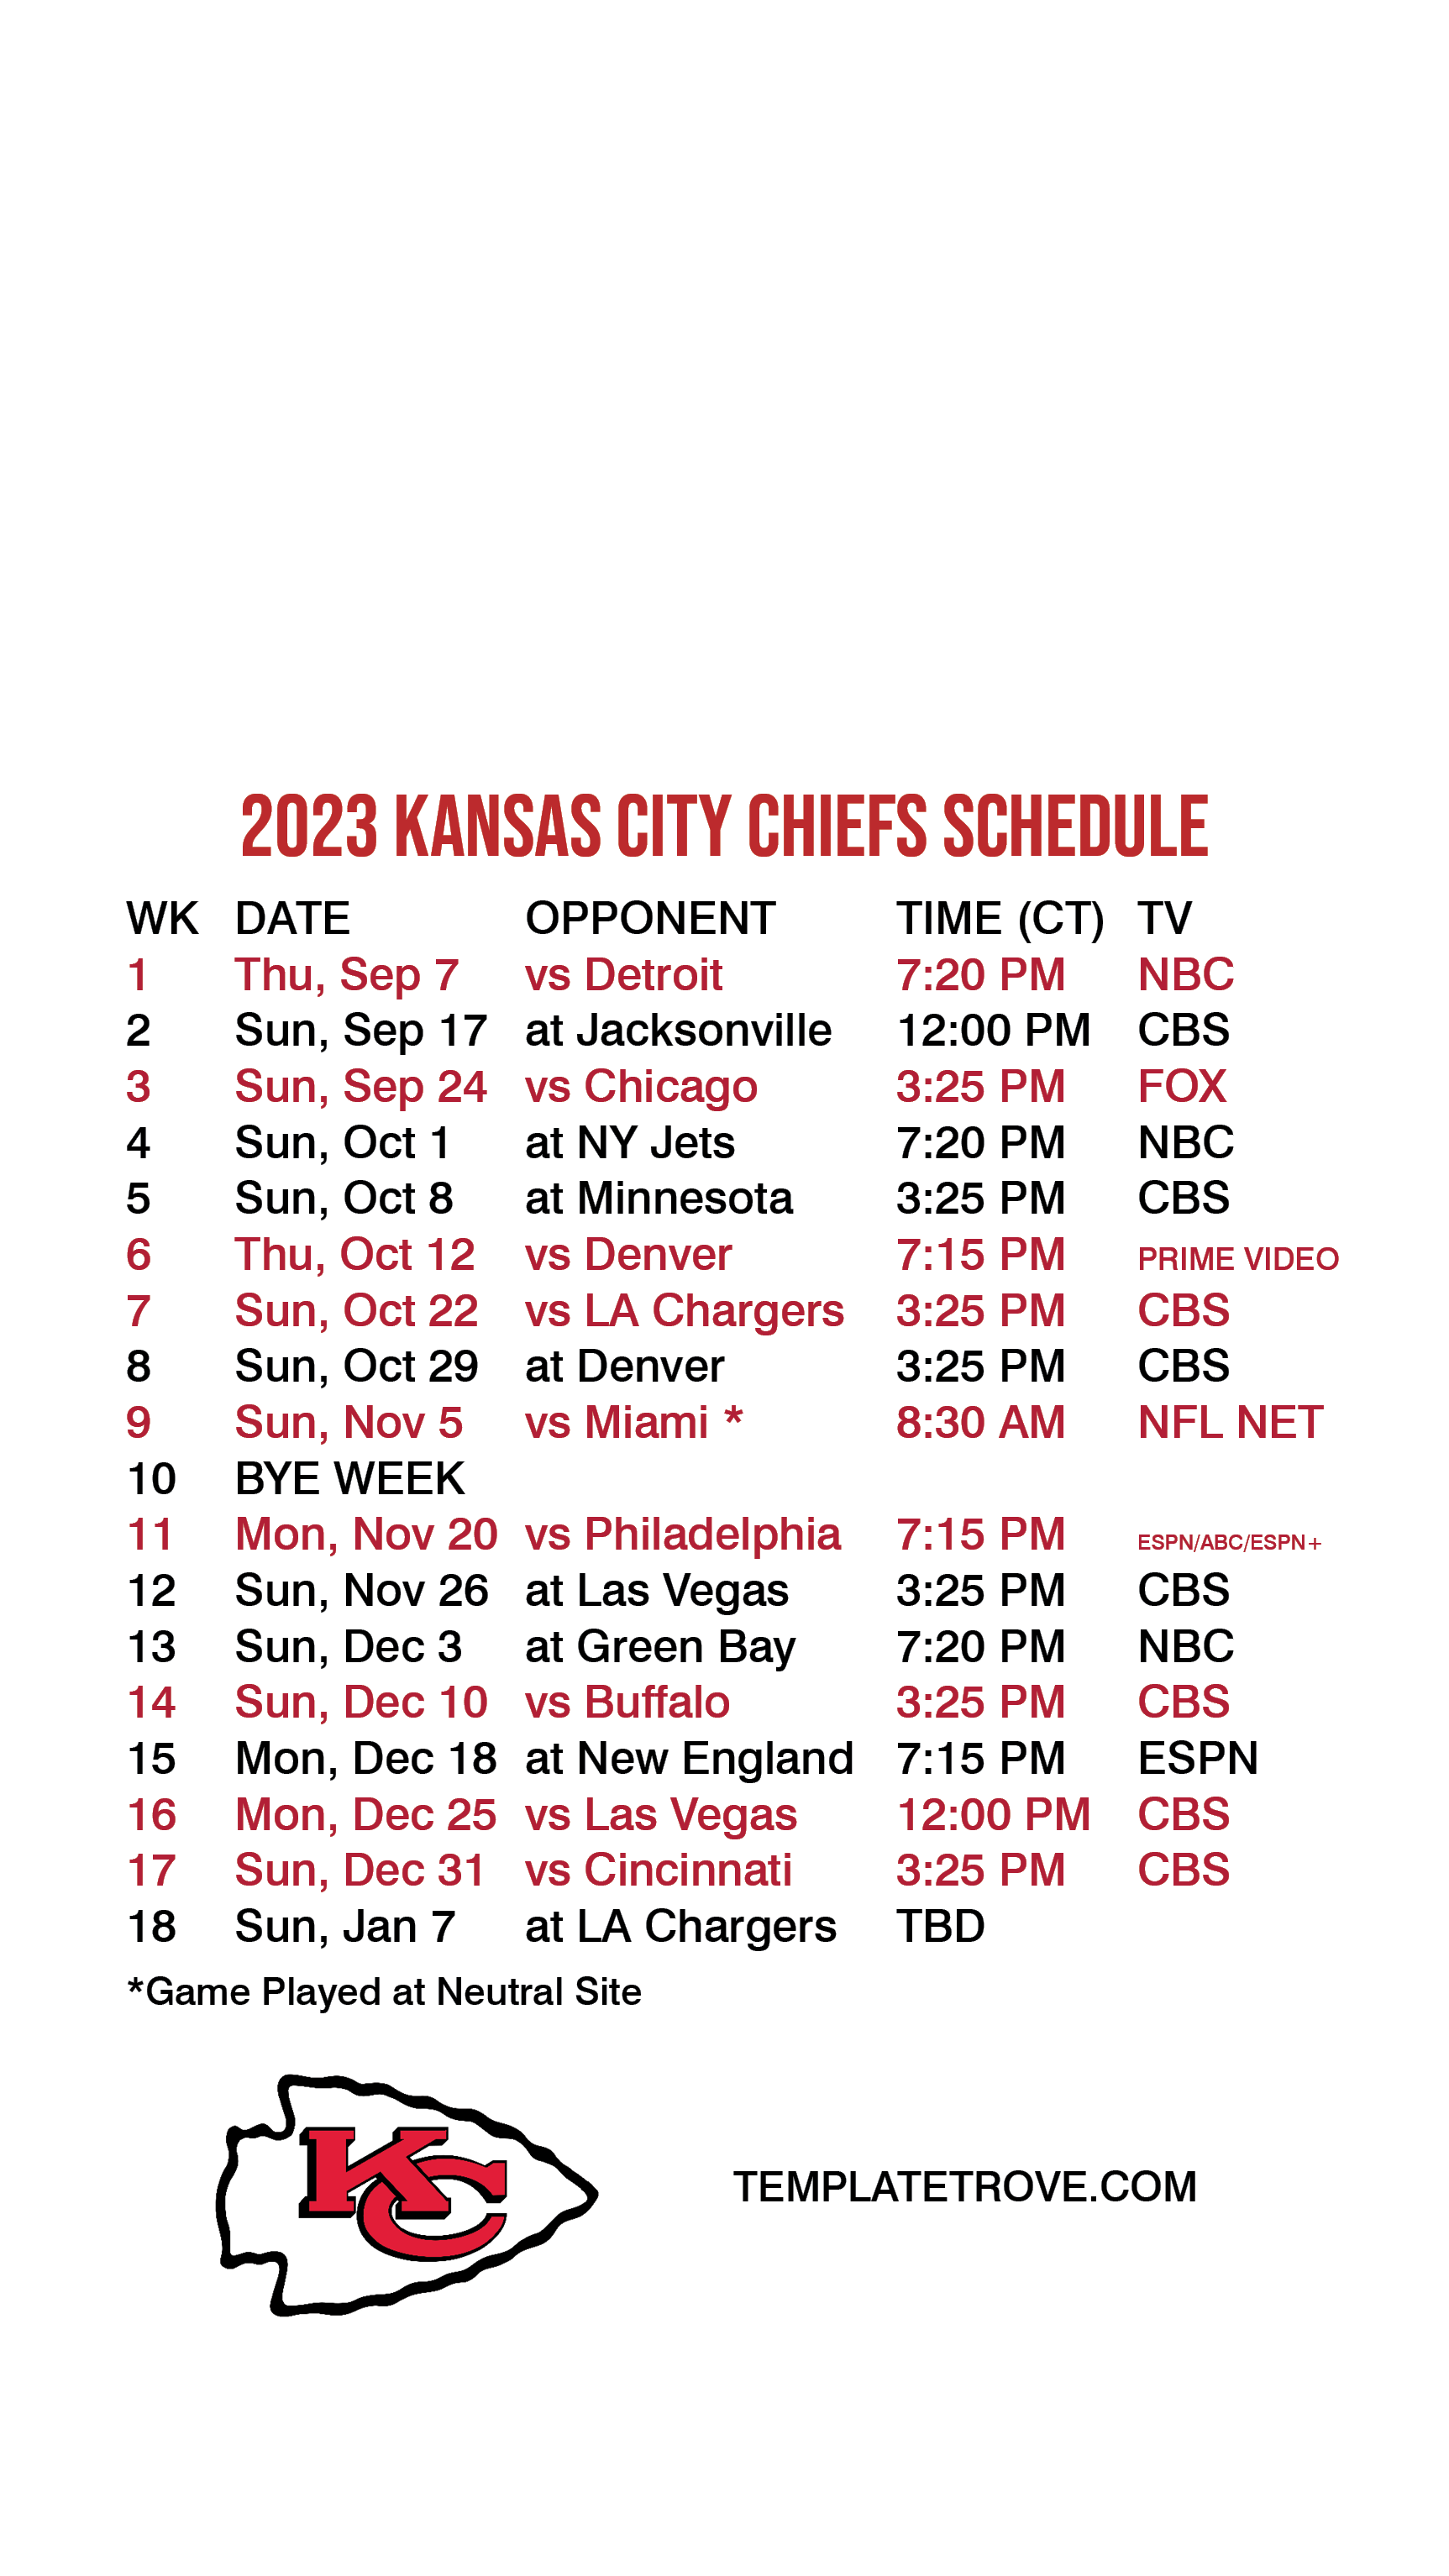 kc chiefs schedule